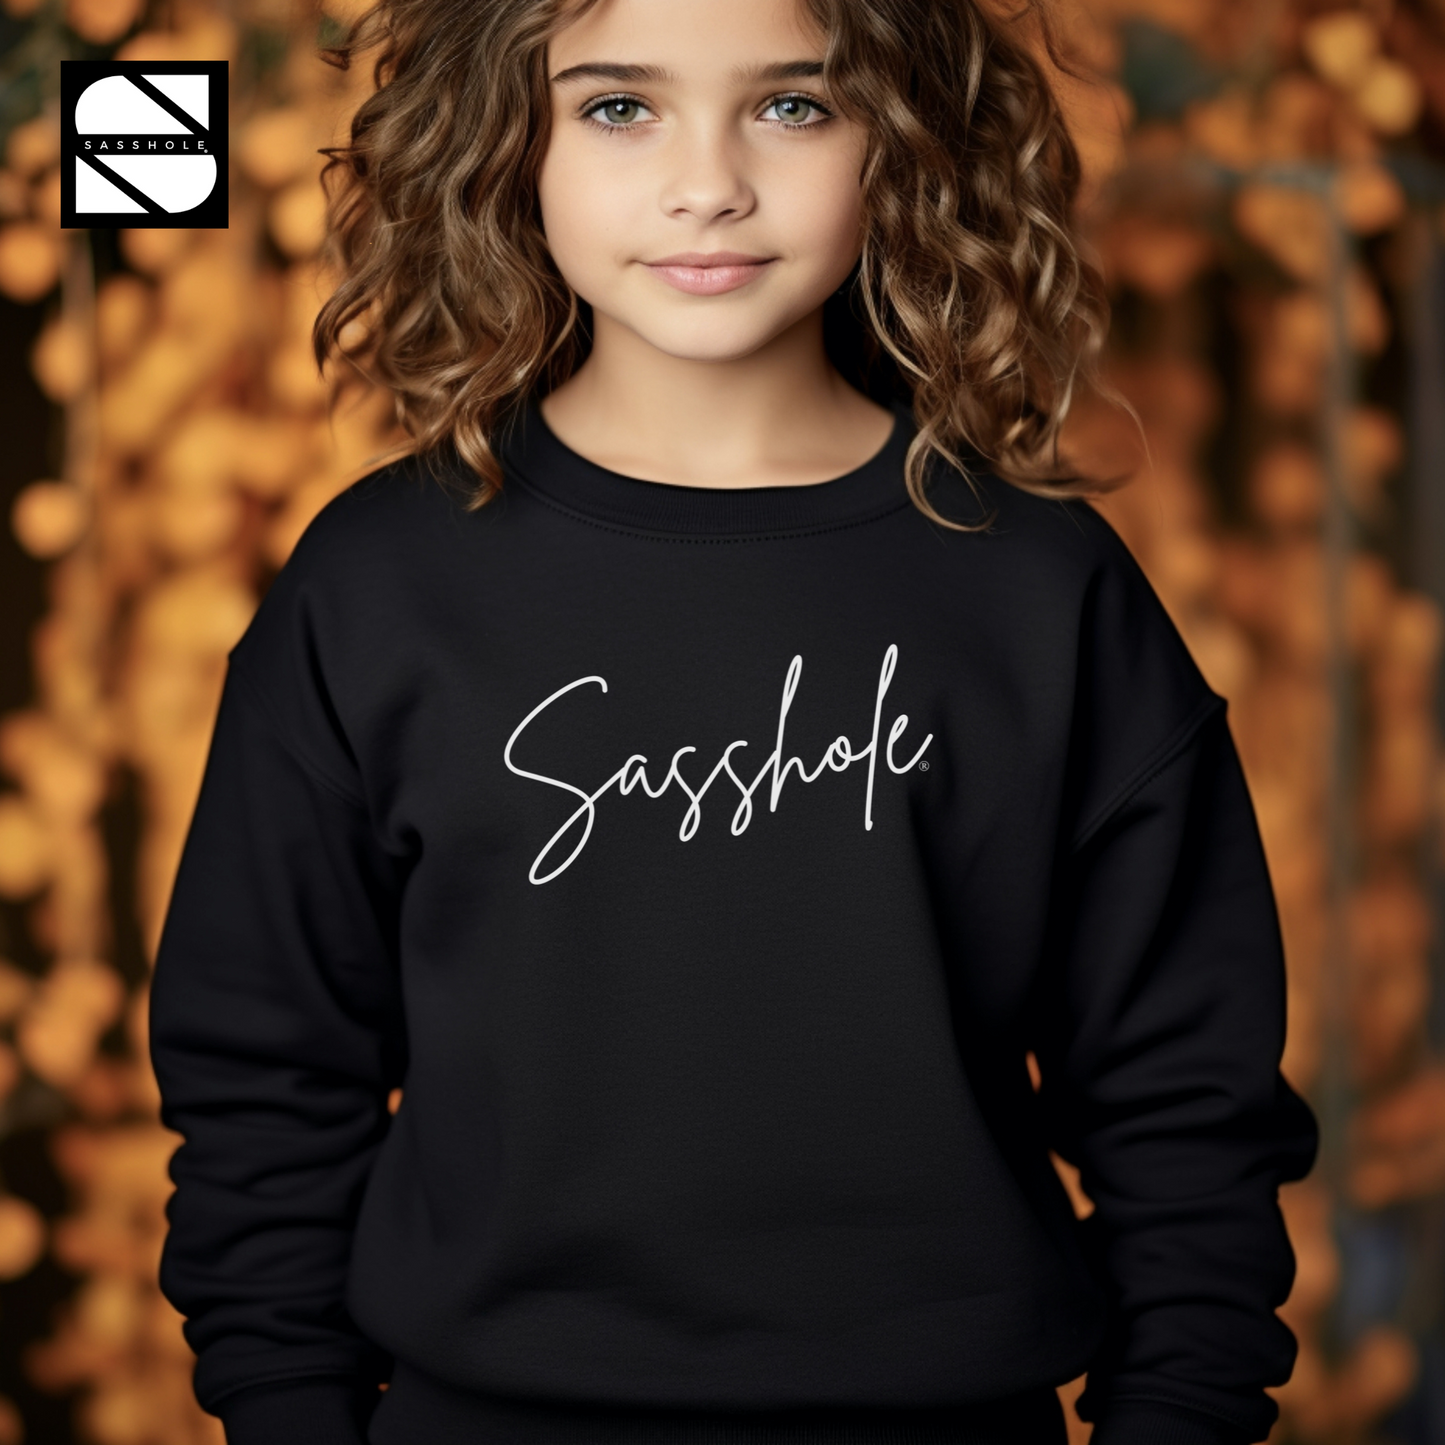 Sassy Tude & Trend Setter: Sasshole® Youth Girls Sweatshirt